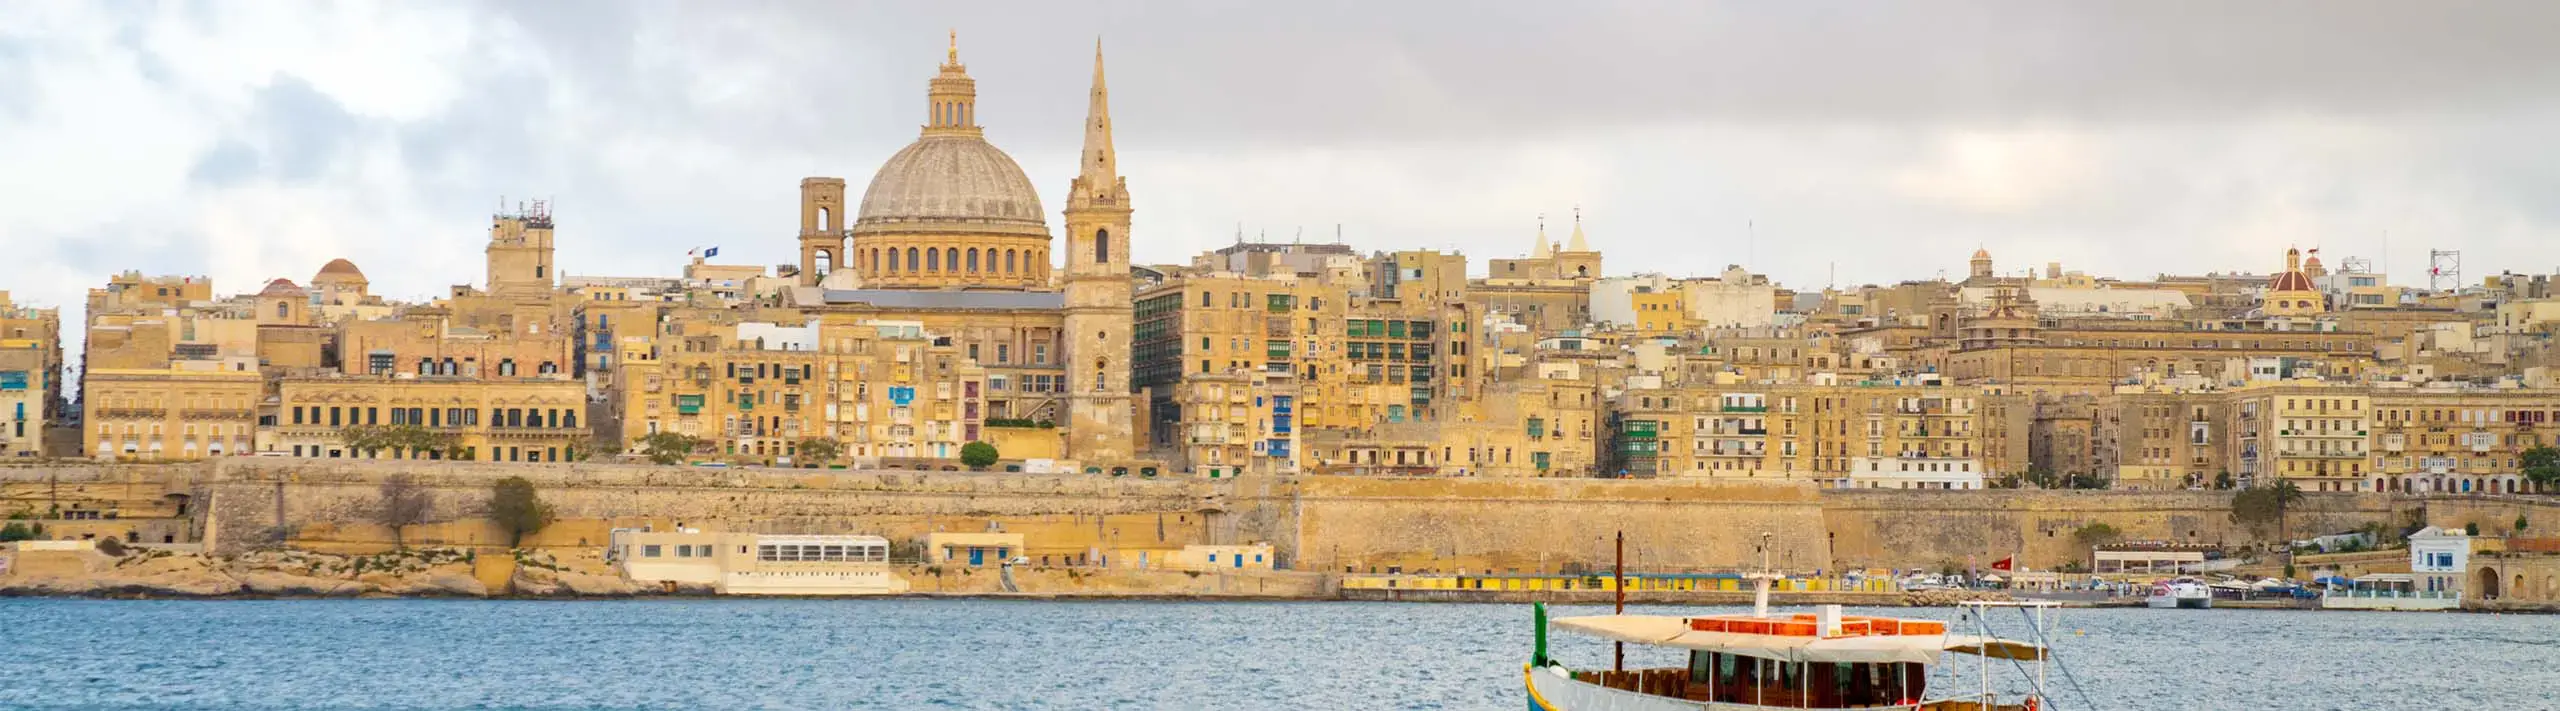 Valletta, the capital of Malta:فاليتا/ Valleta عاصمة مالطا: